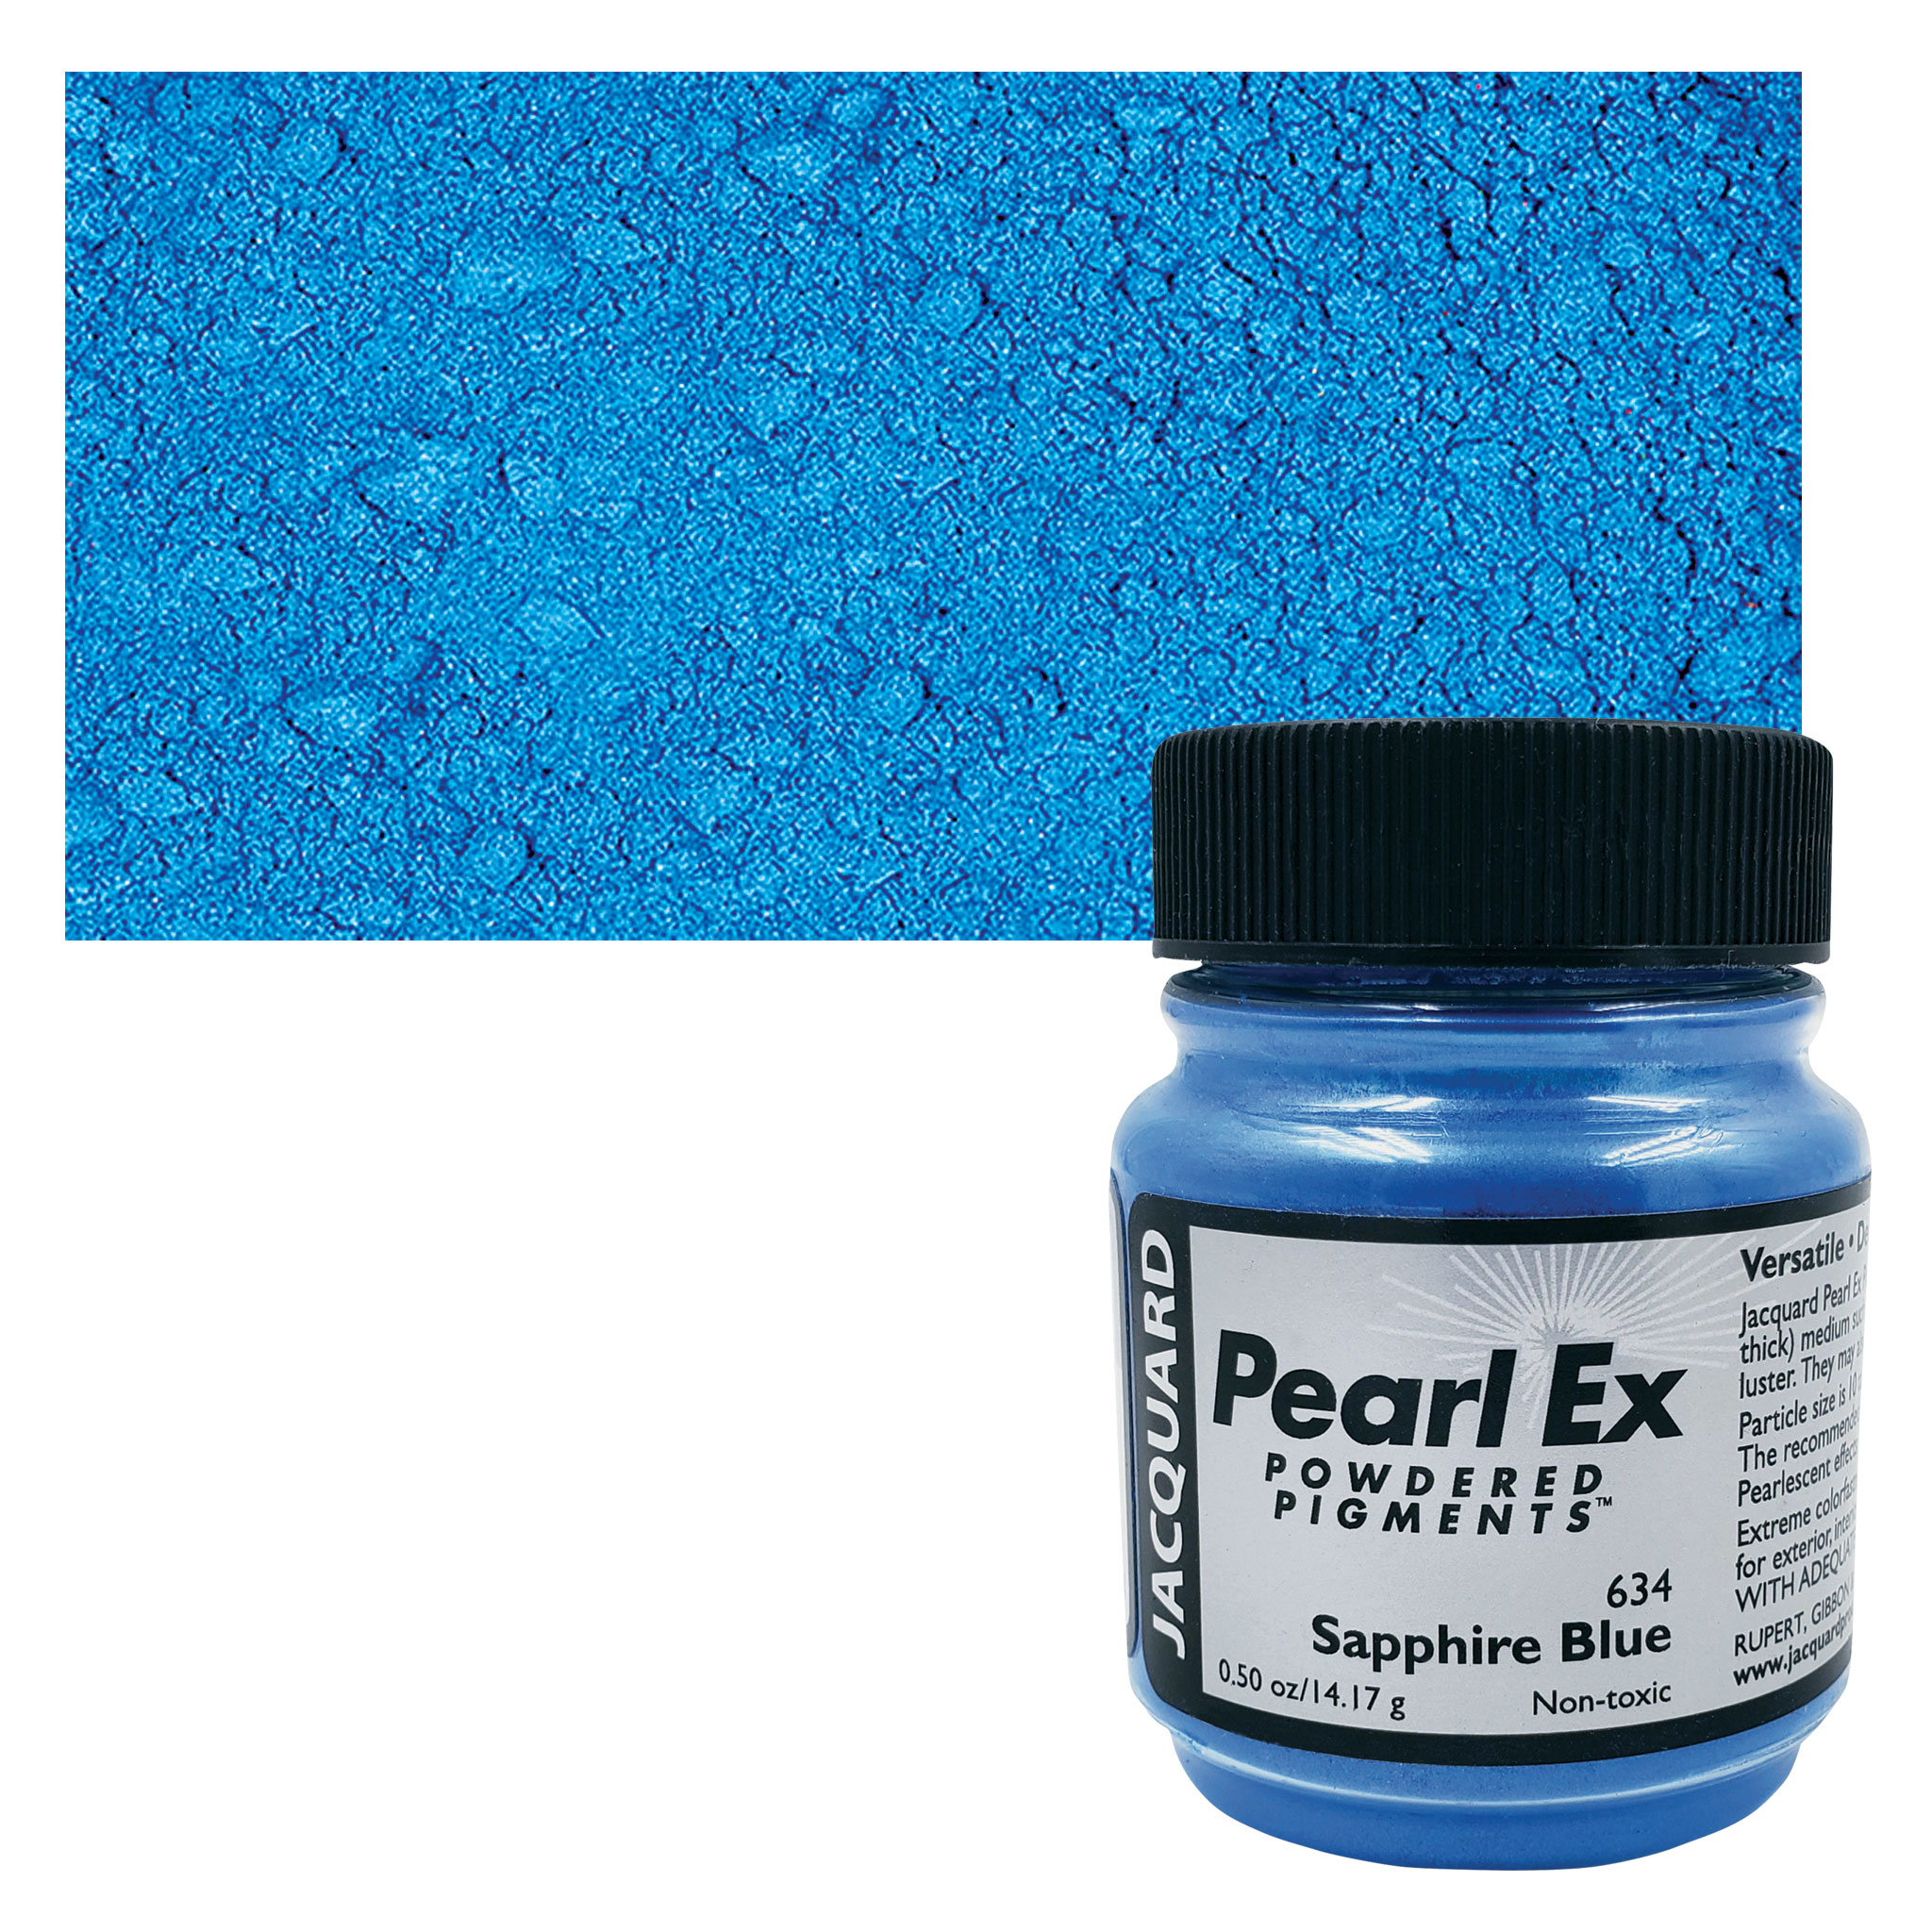 Jacquard Pearl-Ex Pigment - 4 oz, Interference Blue, Jar